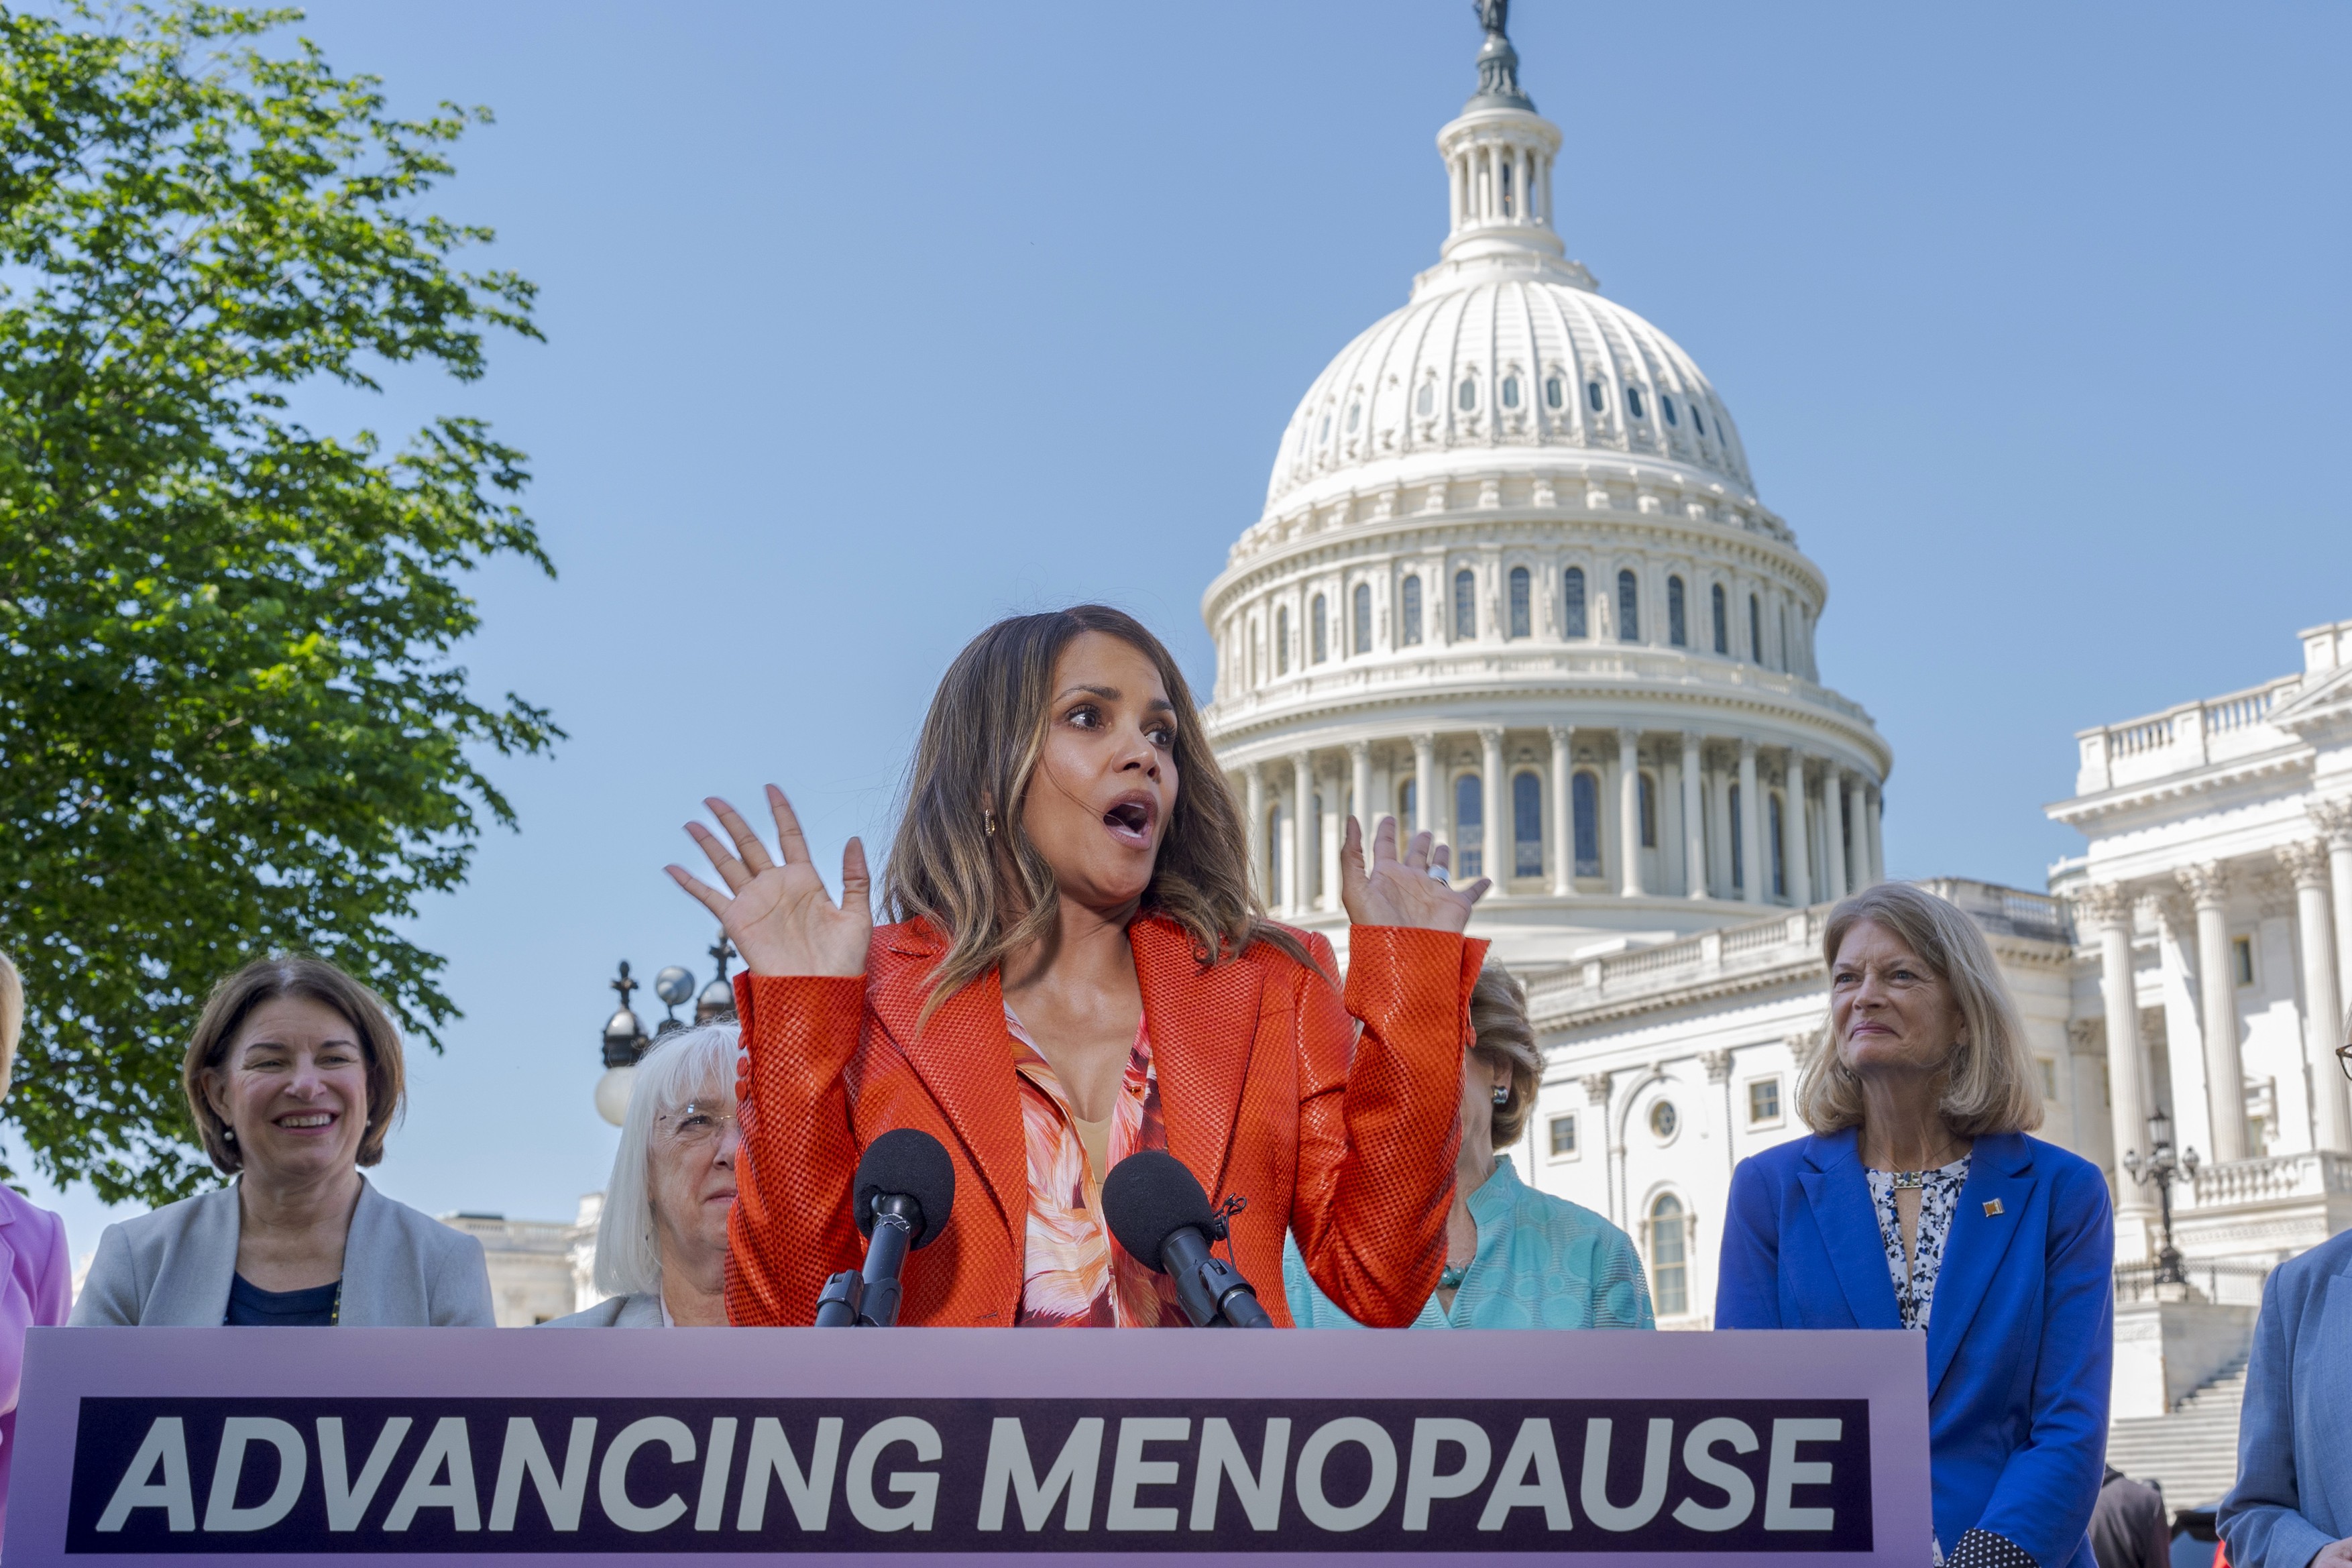 video-halle-berry-i-senatoarele-americane-cer-fonduri-pentru-a-cercet-ri-asupra-menopauzei-doctorii-no-tri-nici-m-car-nu-pot-pronun-a-cuv-ntul